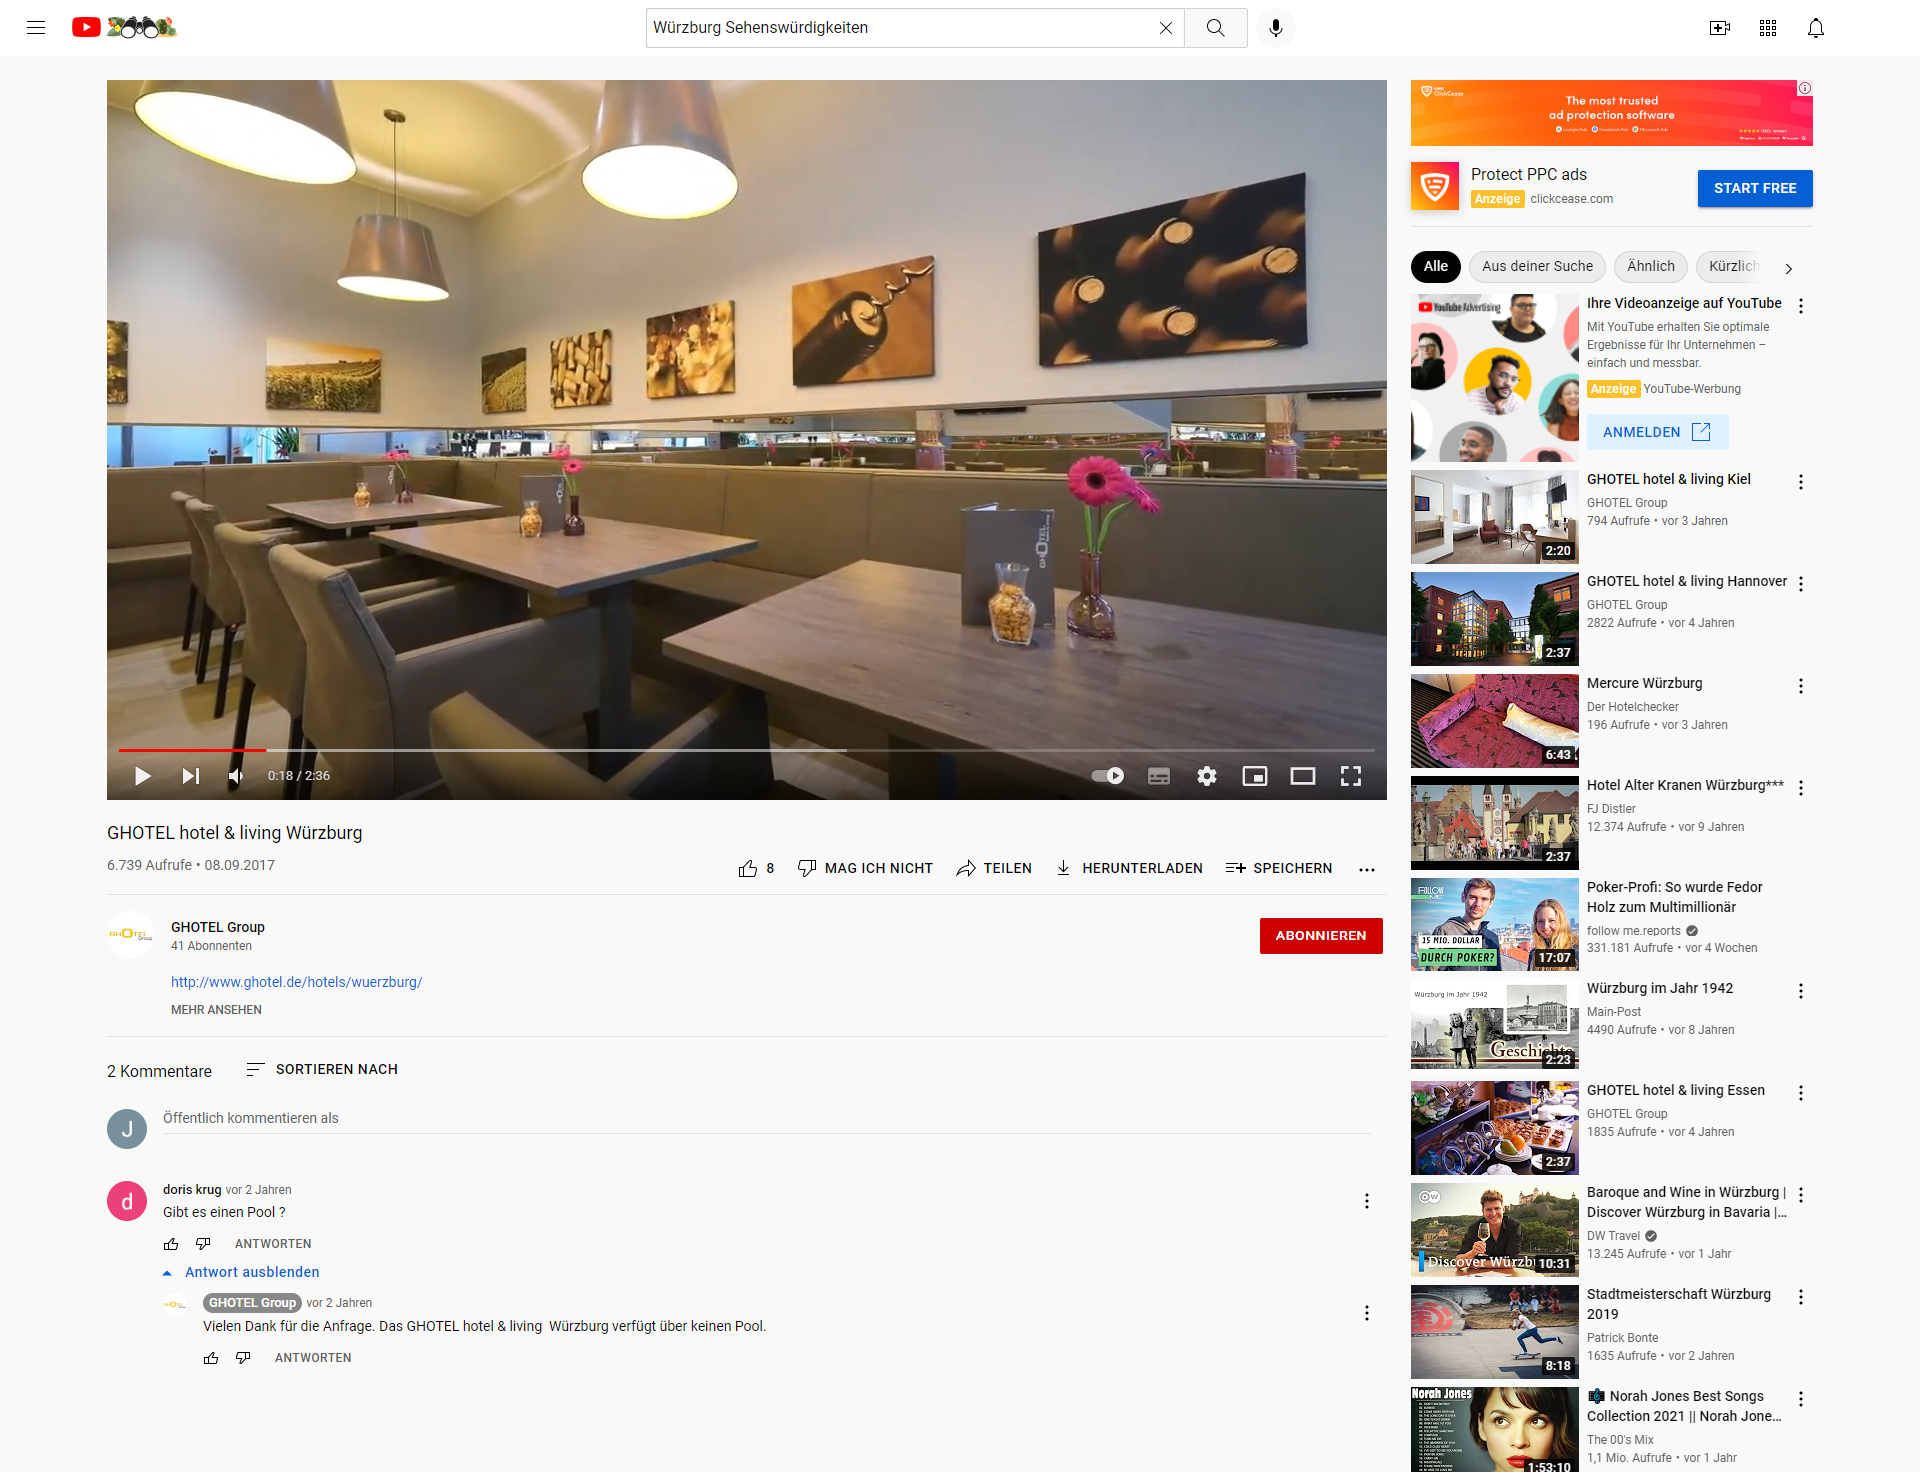 YouTube Marketing für Hotels